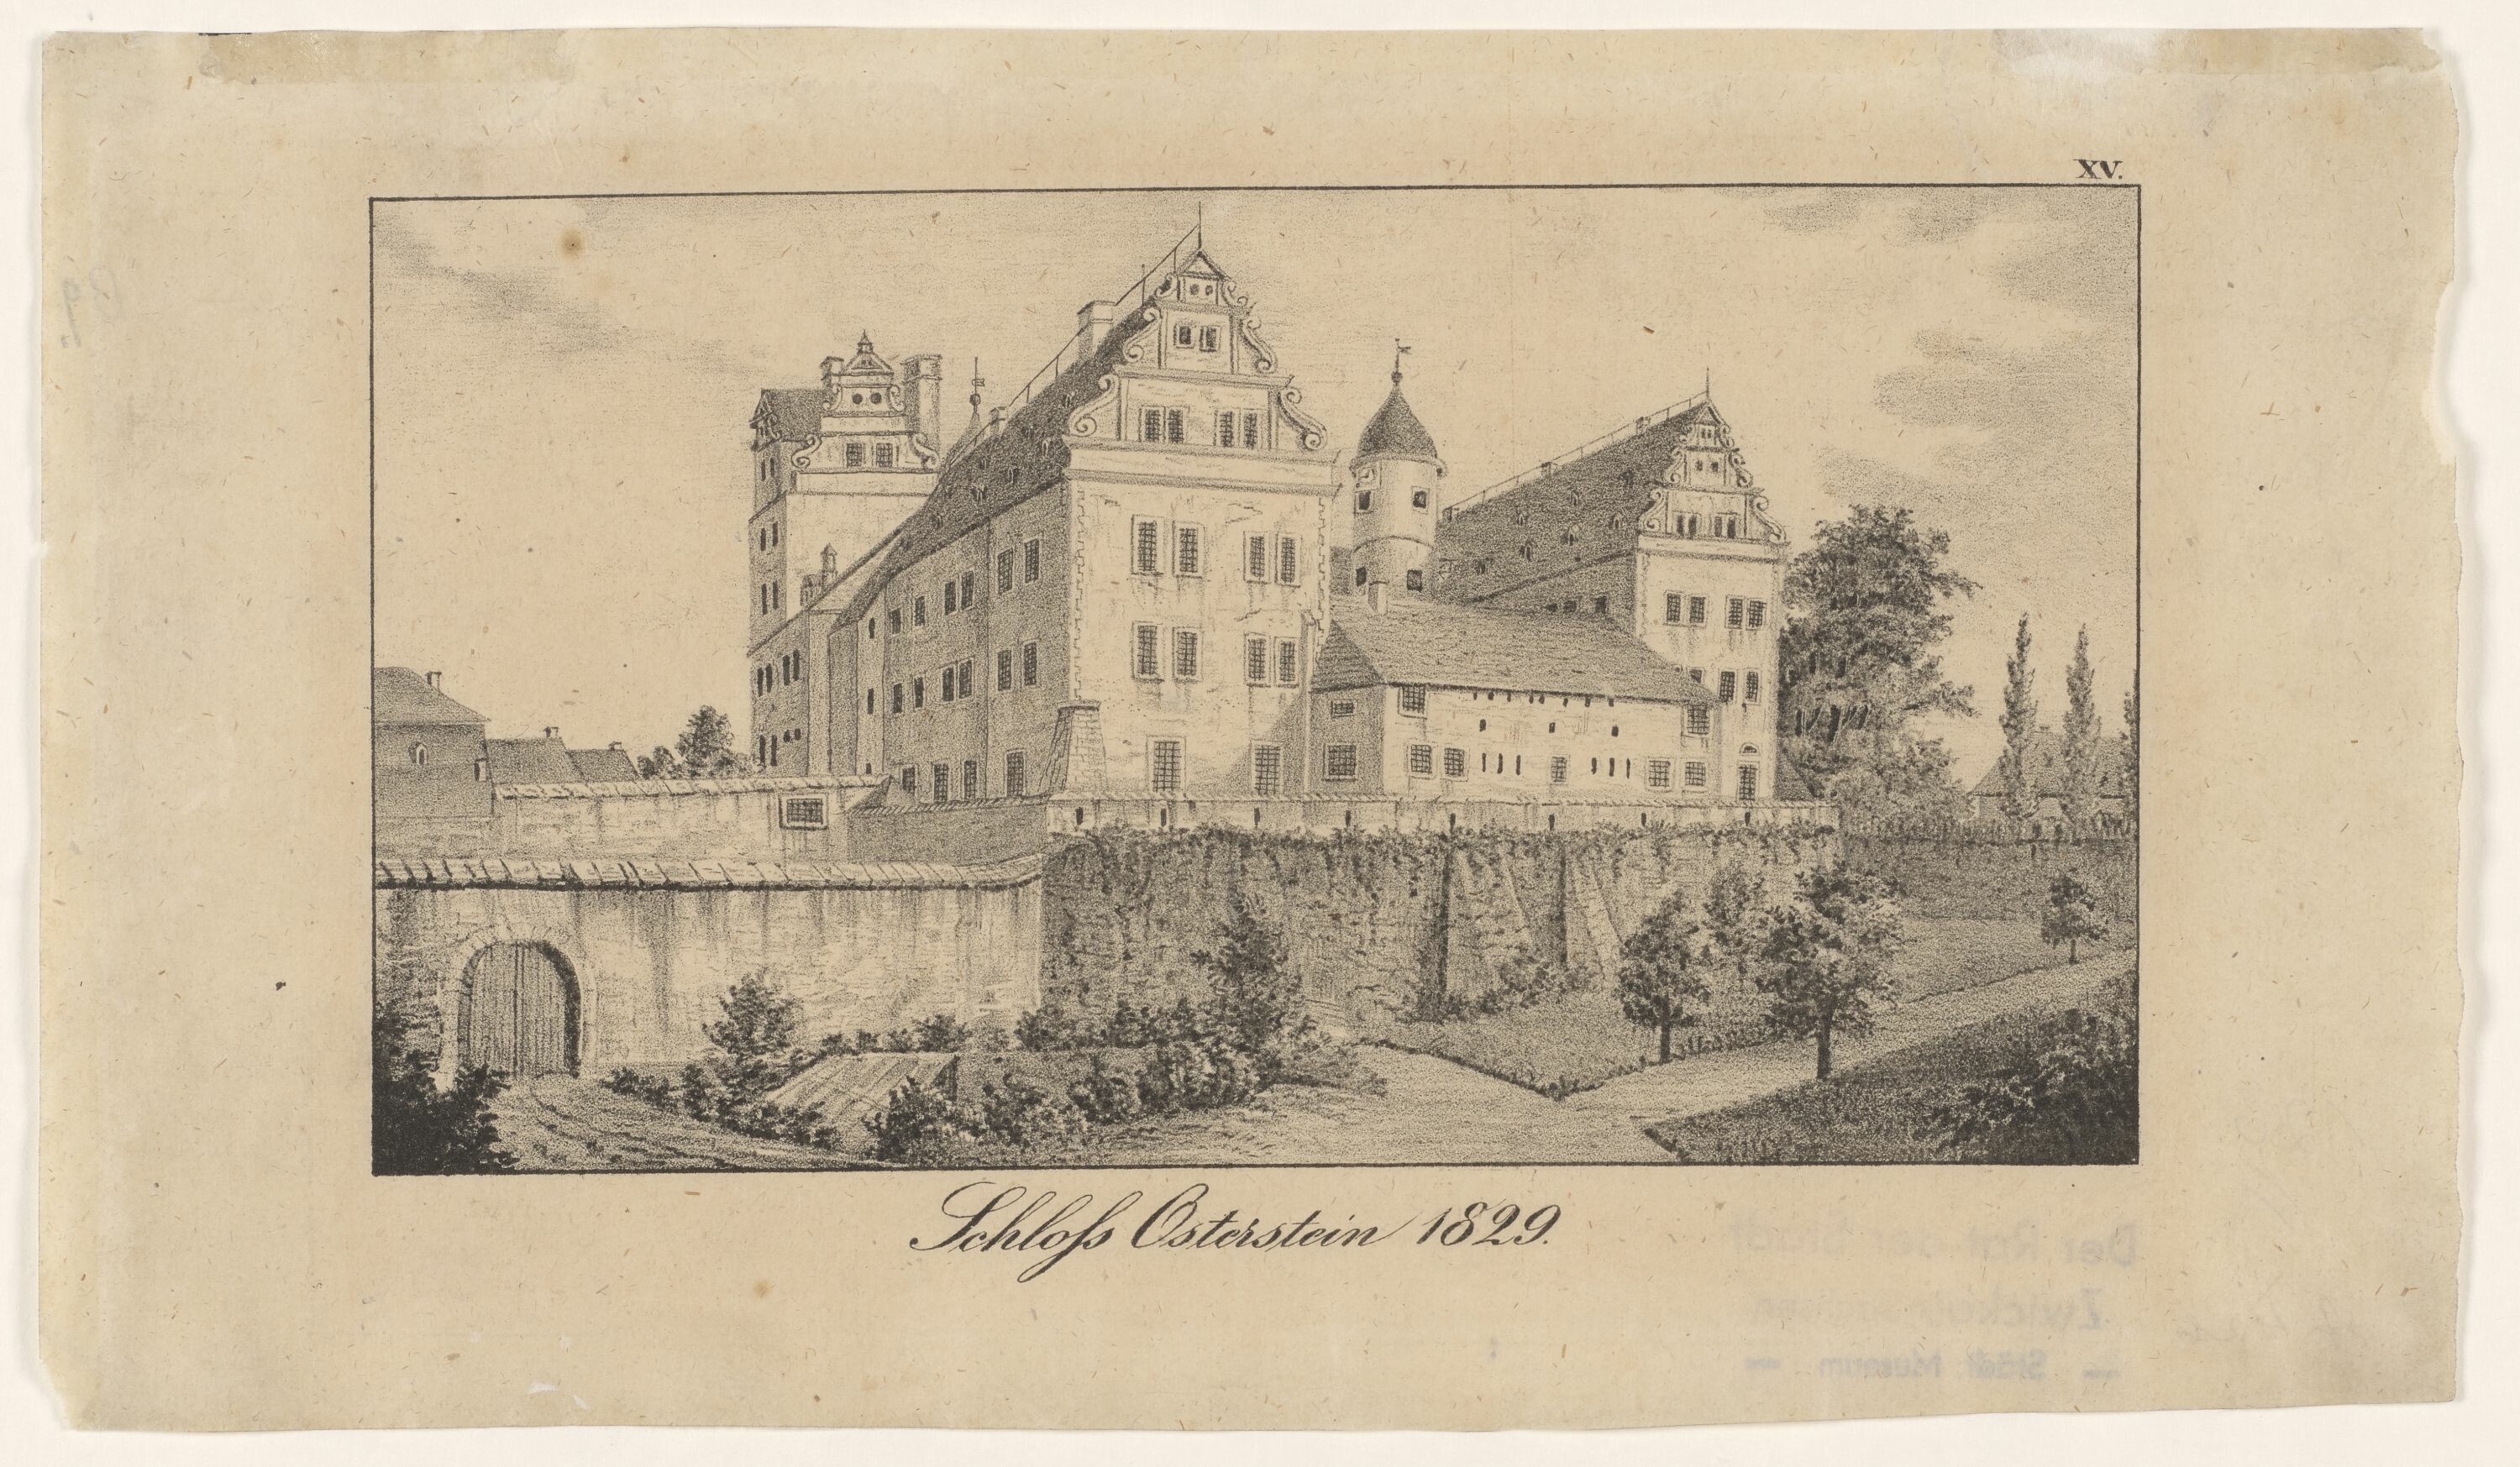 Schloß Osterstein 1829, aus: Herzog, Chronik von Zwickau Bd. II, 1839 (KUNSTSAMMLUNGEN ZWICKAU Max-Pechstein-Museum RR-F)